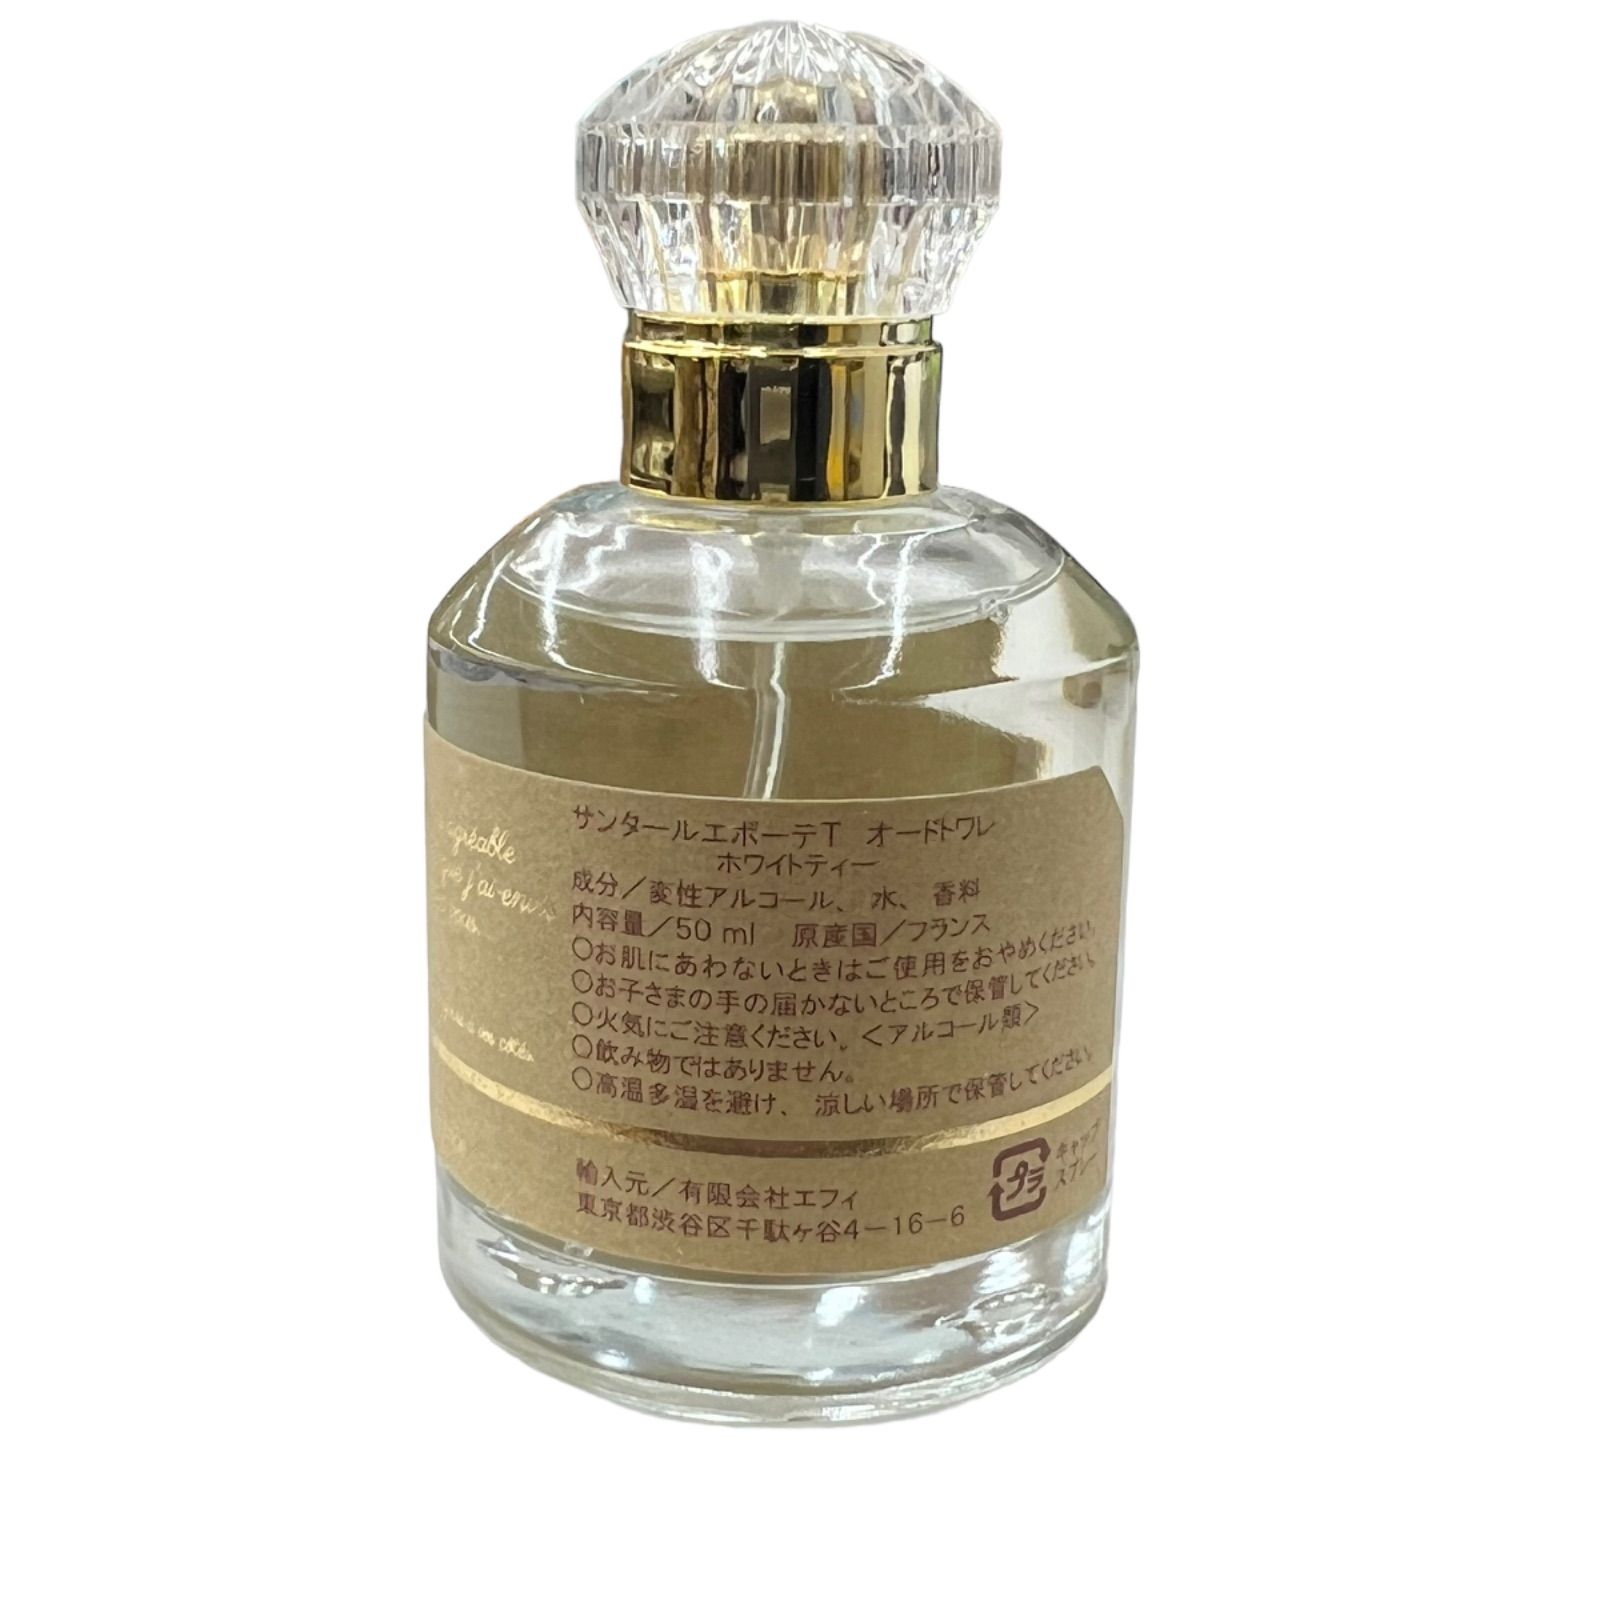 サンタールエボーテホワイトティー - 香水(ユニセックス)